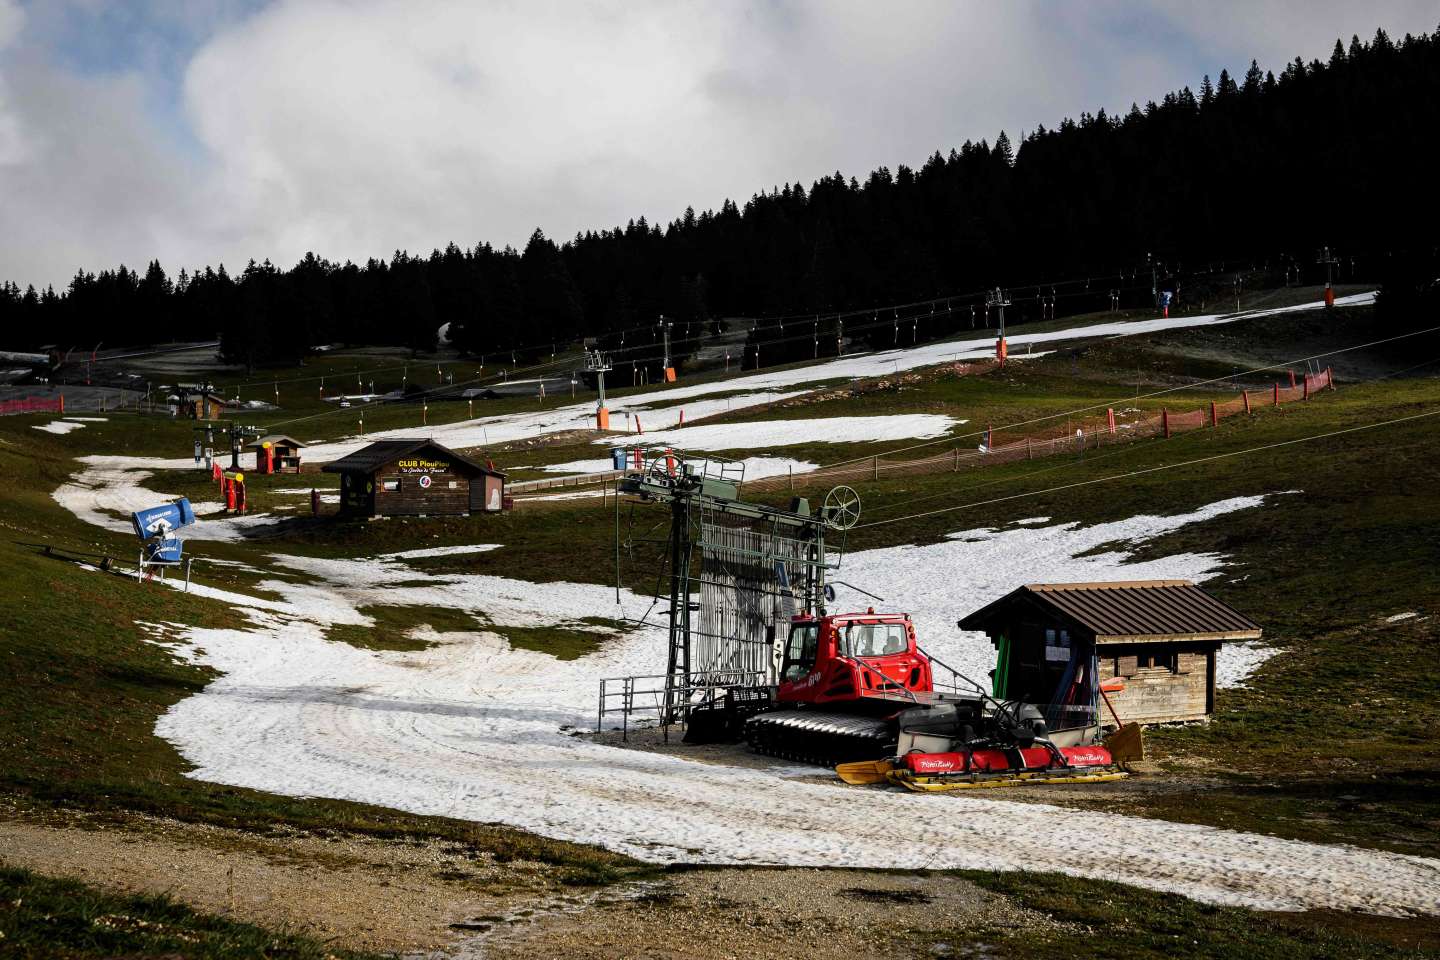 Beaucoup de pluie, peu de neige : début de saison difficile dans les stations de ski